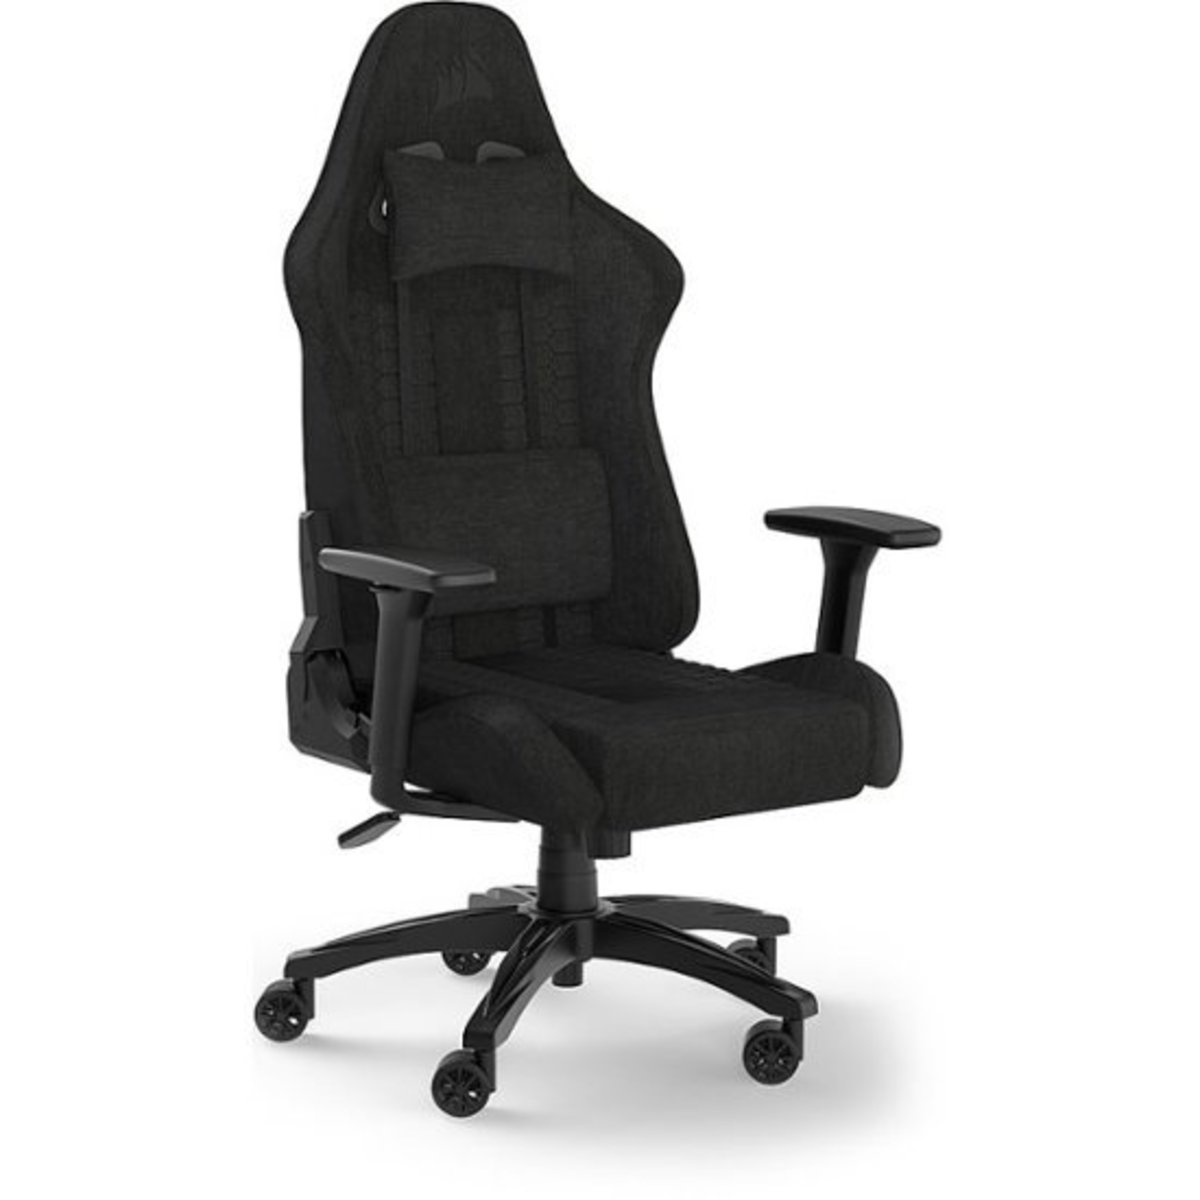 Corsair gaming chair